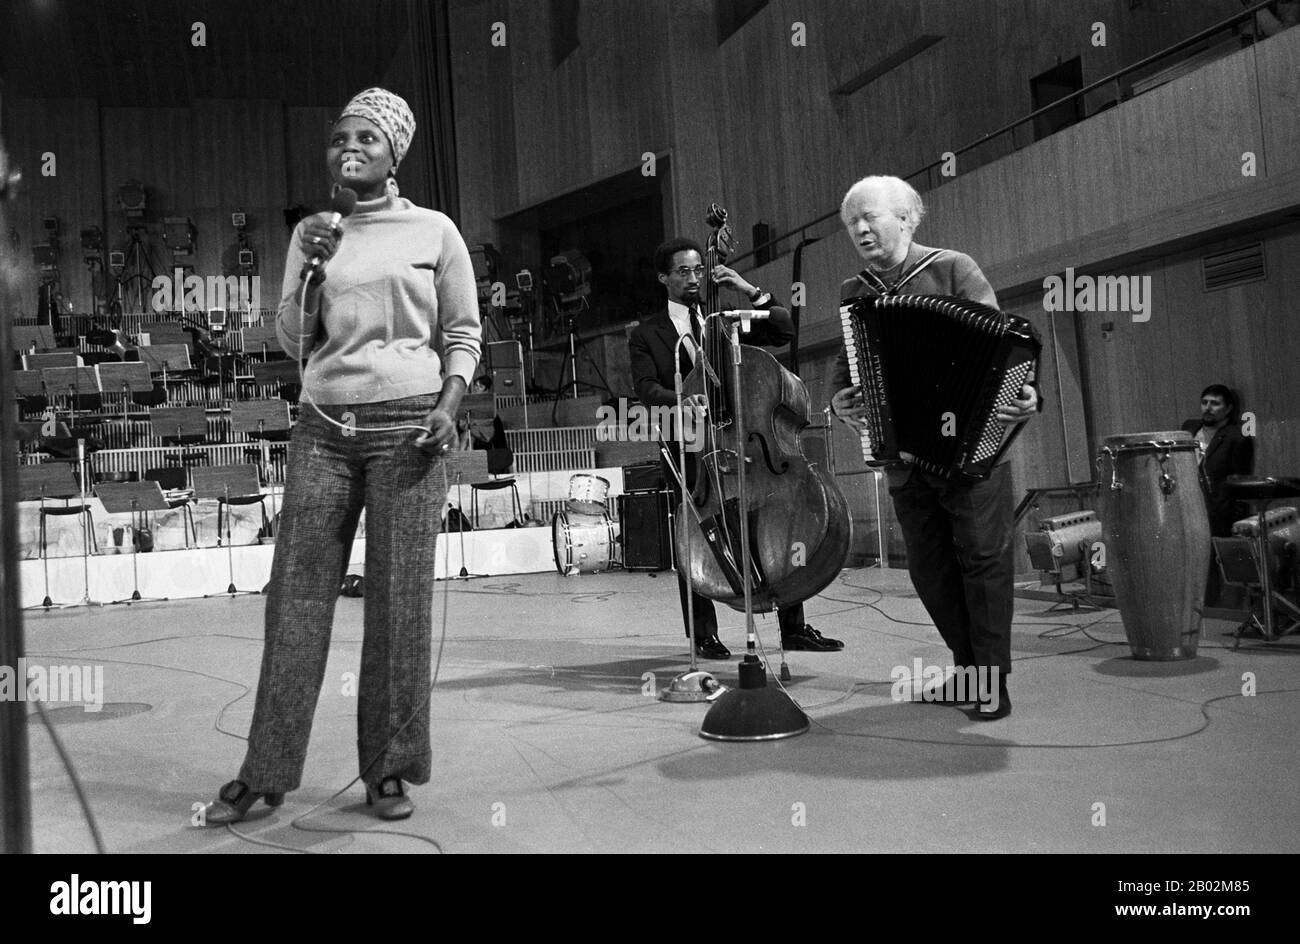 Miriam Makeba, südafrikanische Sängerin, bei Proben zu einem Konzert in Hamburg, Deutschland um 1969. South African singer Miriam Makeba doing rehearsals for a concert at Hamburg, Germany around 1969. Stock Photo